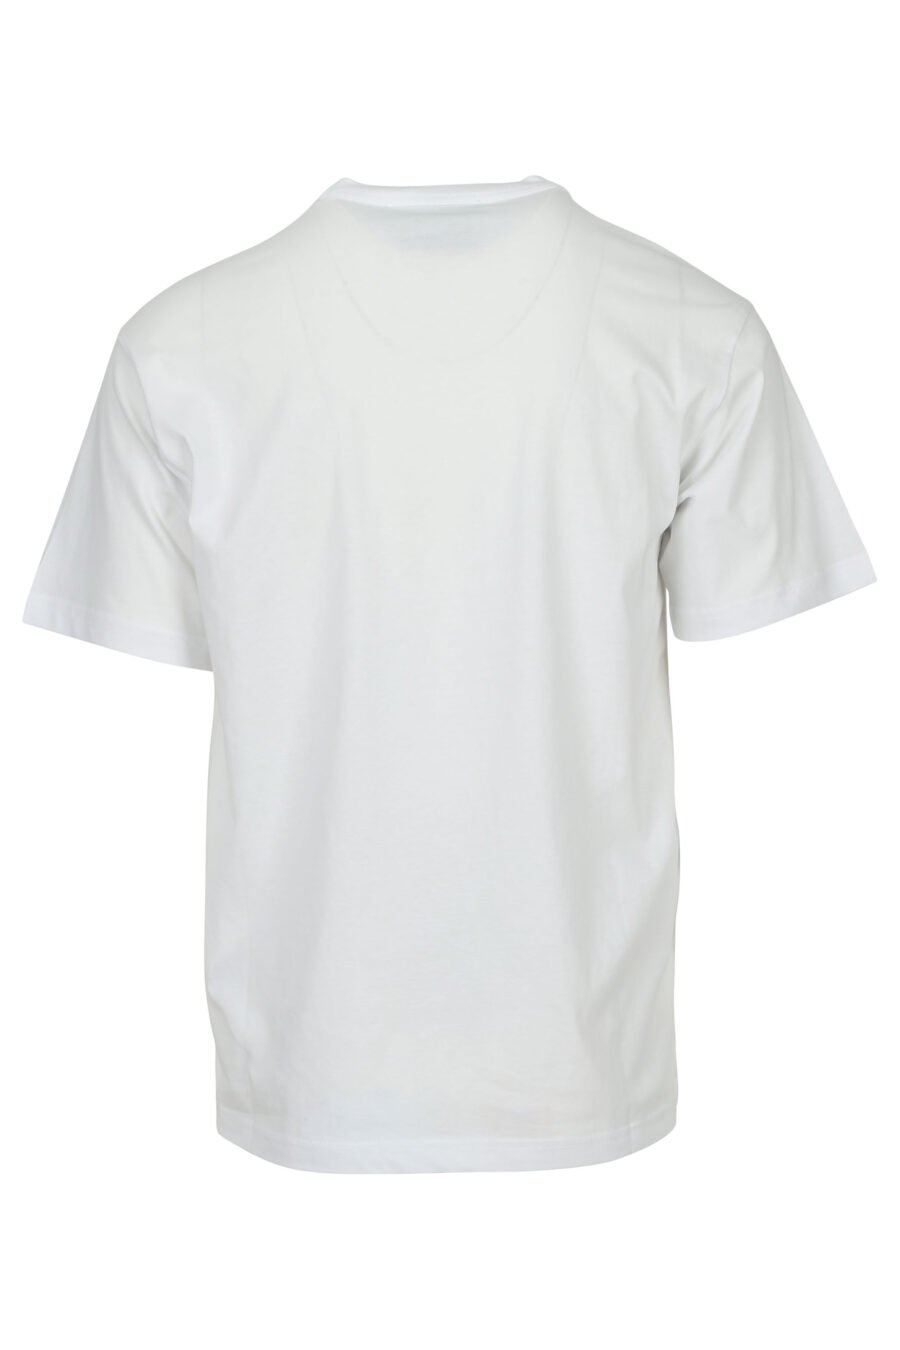 Camiseta blanca con minilogo etiqueta - 8052019597240 1